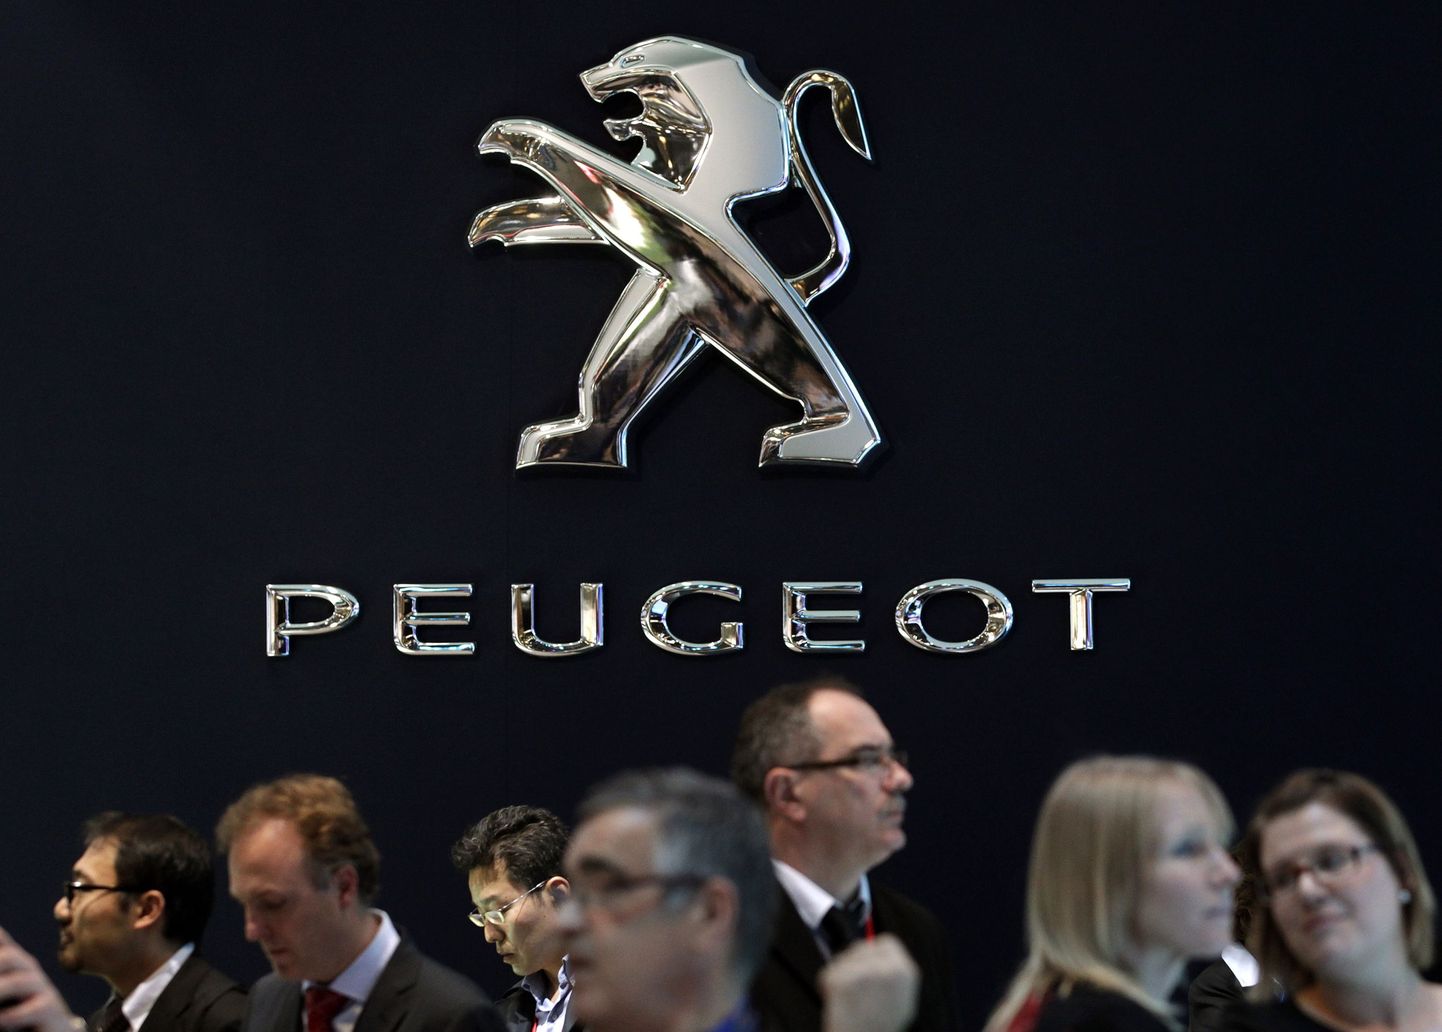 Peugeot on üks Euroopa autotootjatest, kes on koodanud tuhandeid inimesi.